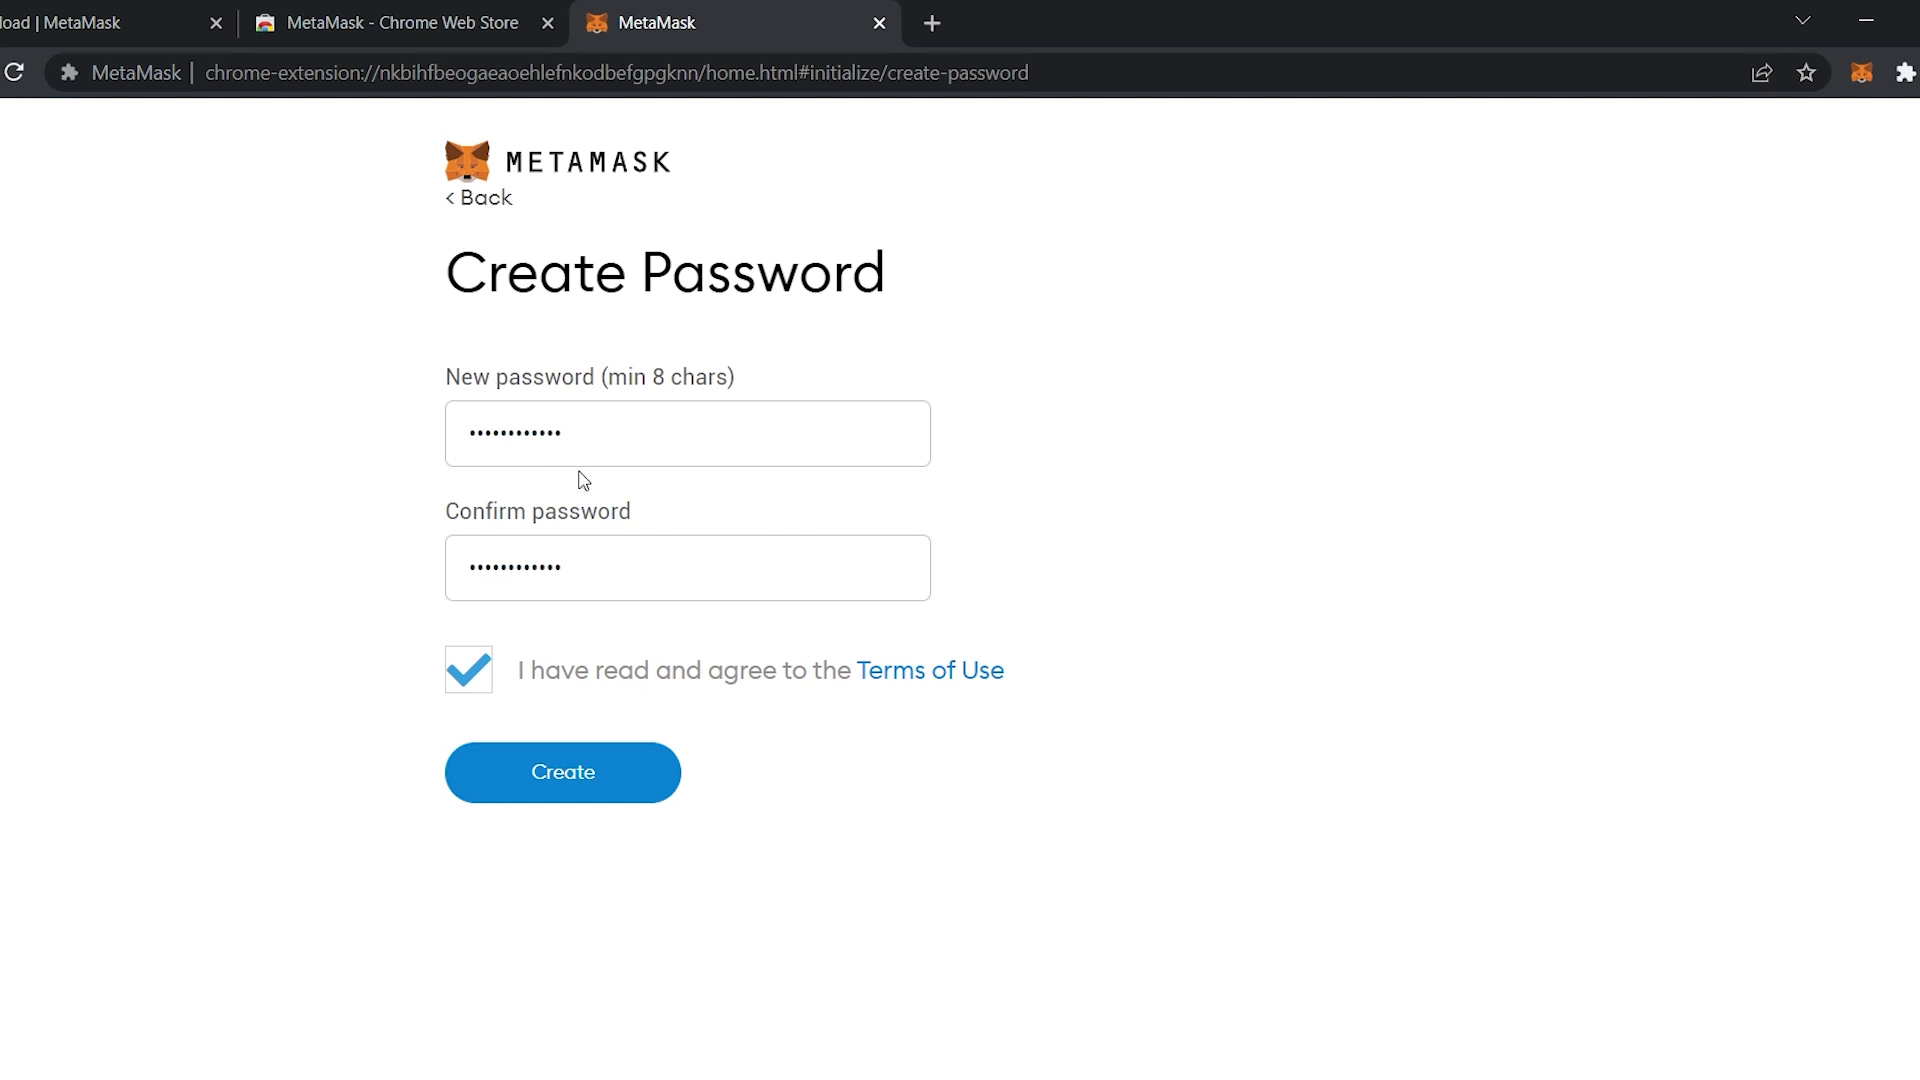 Creating MetaMask Password